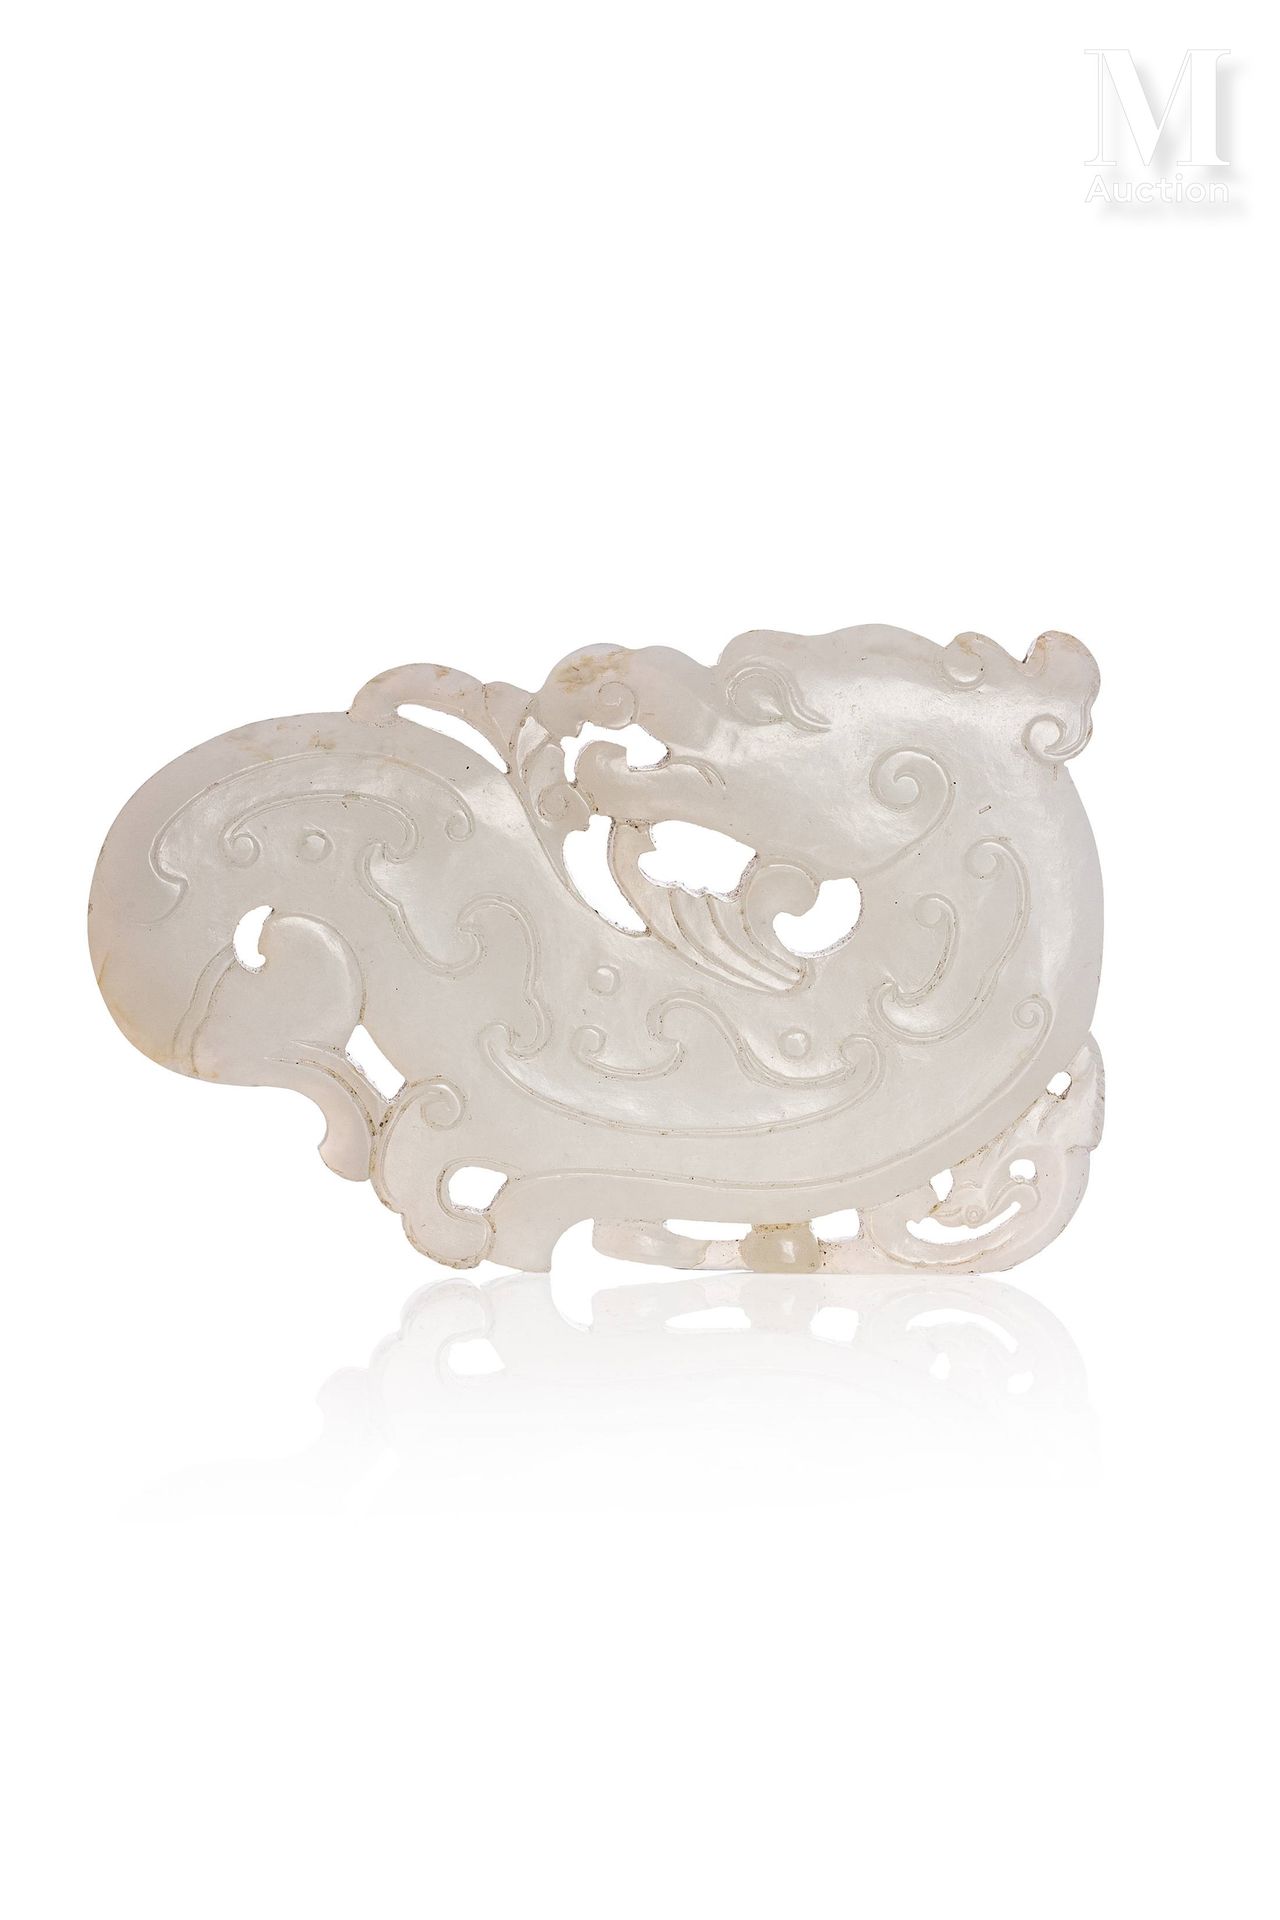 *CHINE, XVIIIe siècle 
Element en jade blanc prenant la forme d'un dragon Kui.

&hellip;